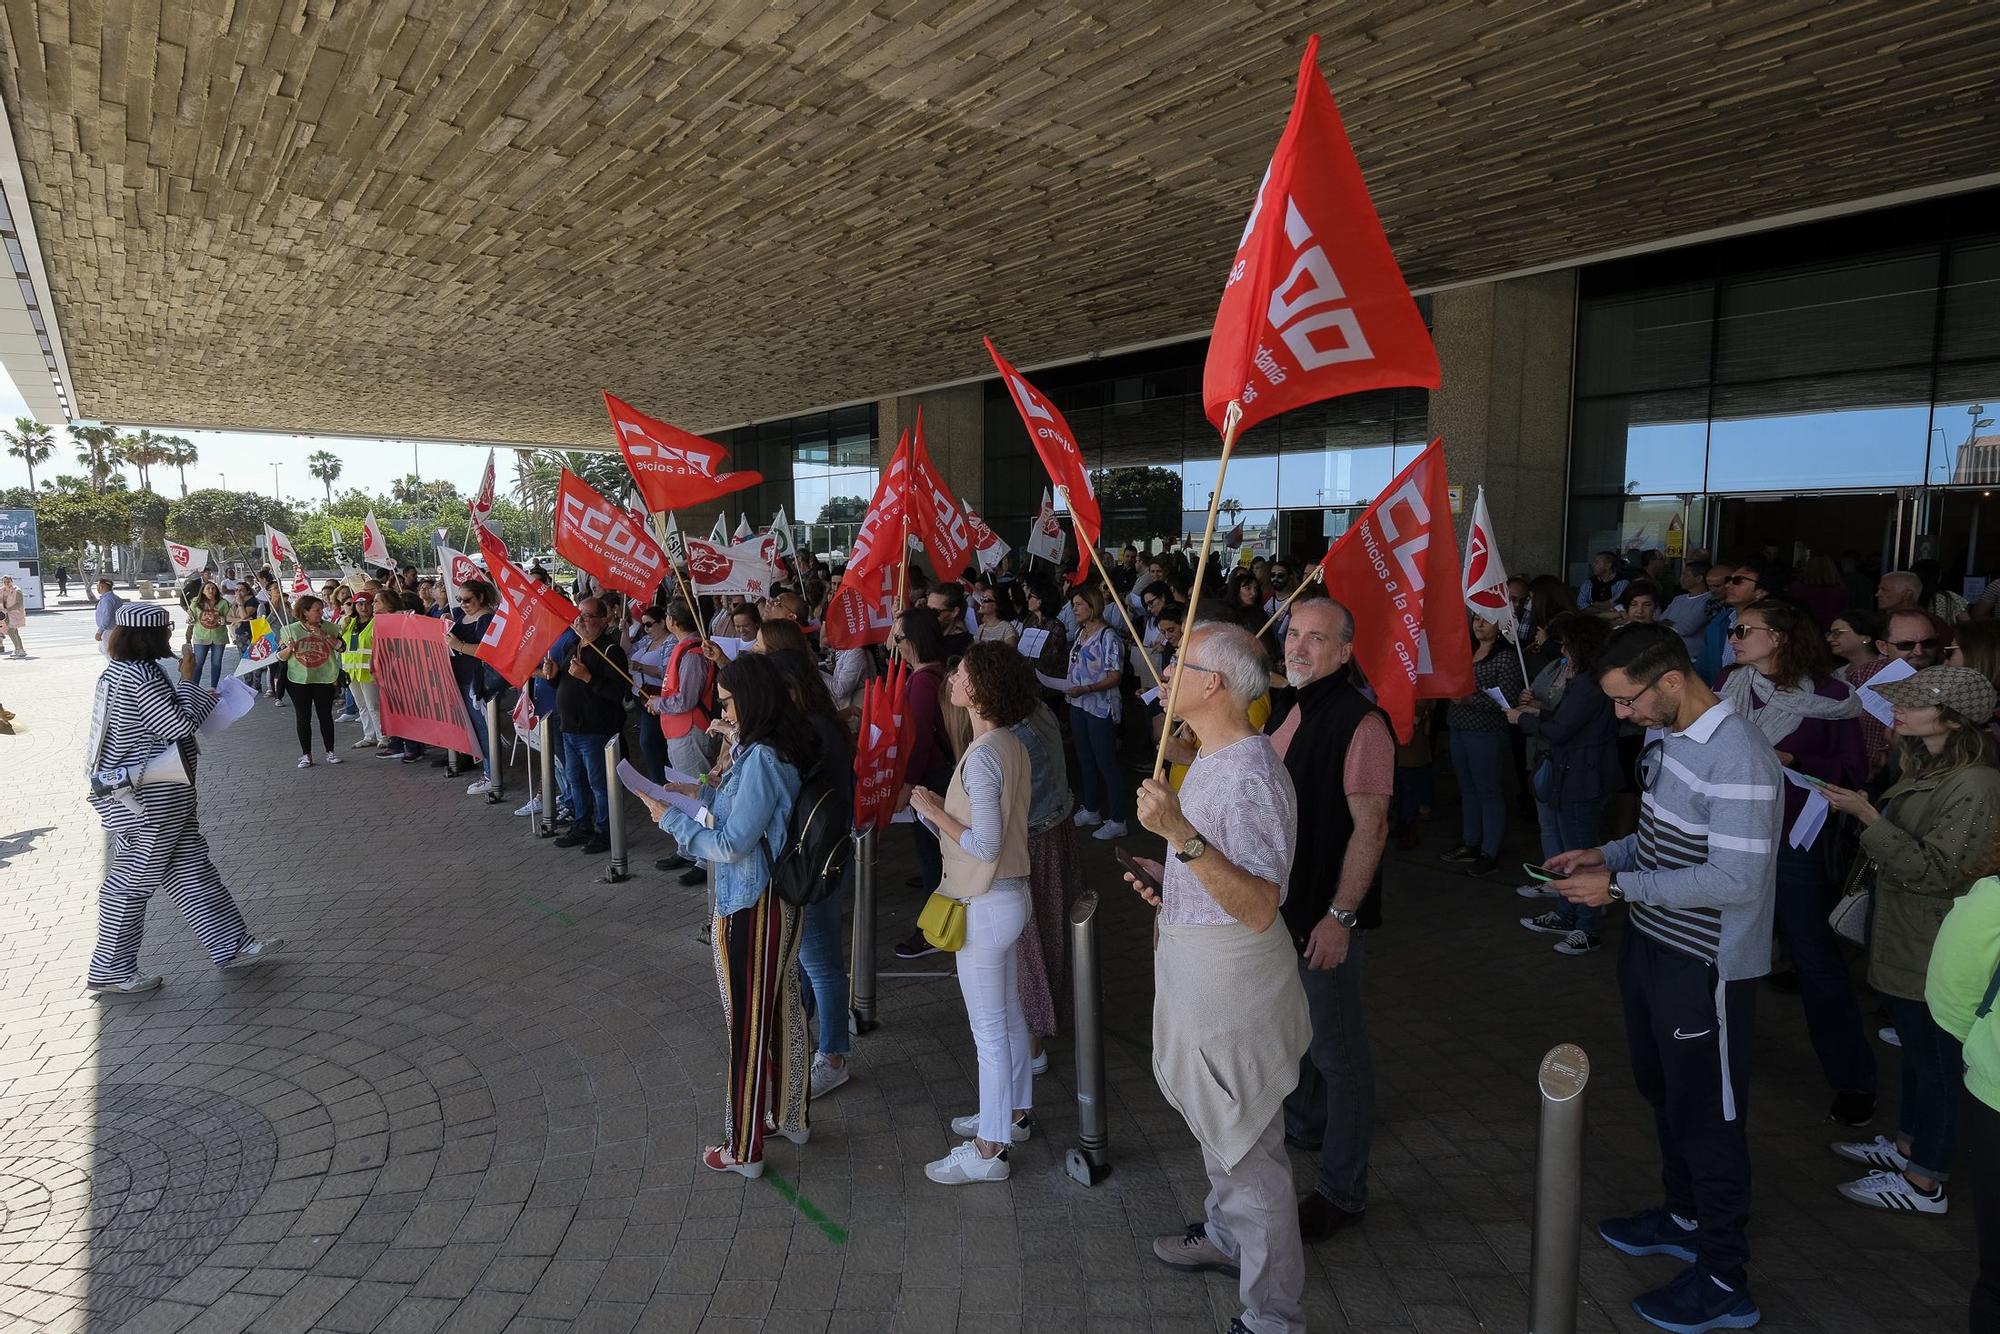 Huelga de funcionarios en la Ciudad de la Justicia de Las Palmas de Gran Canaria